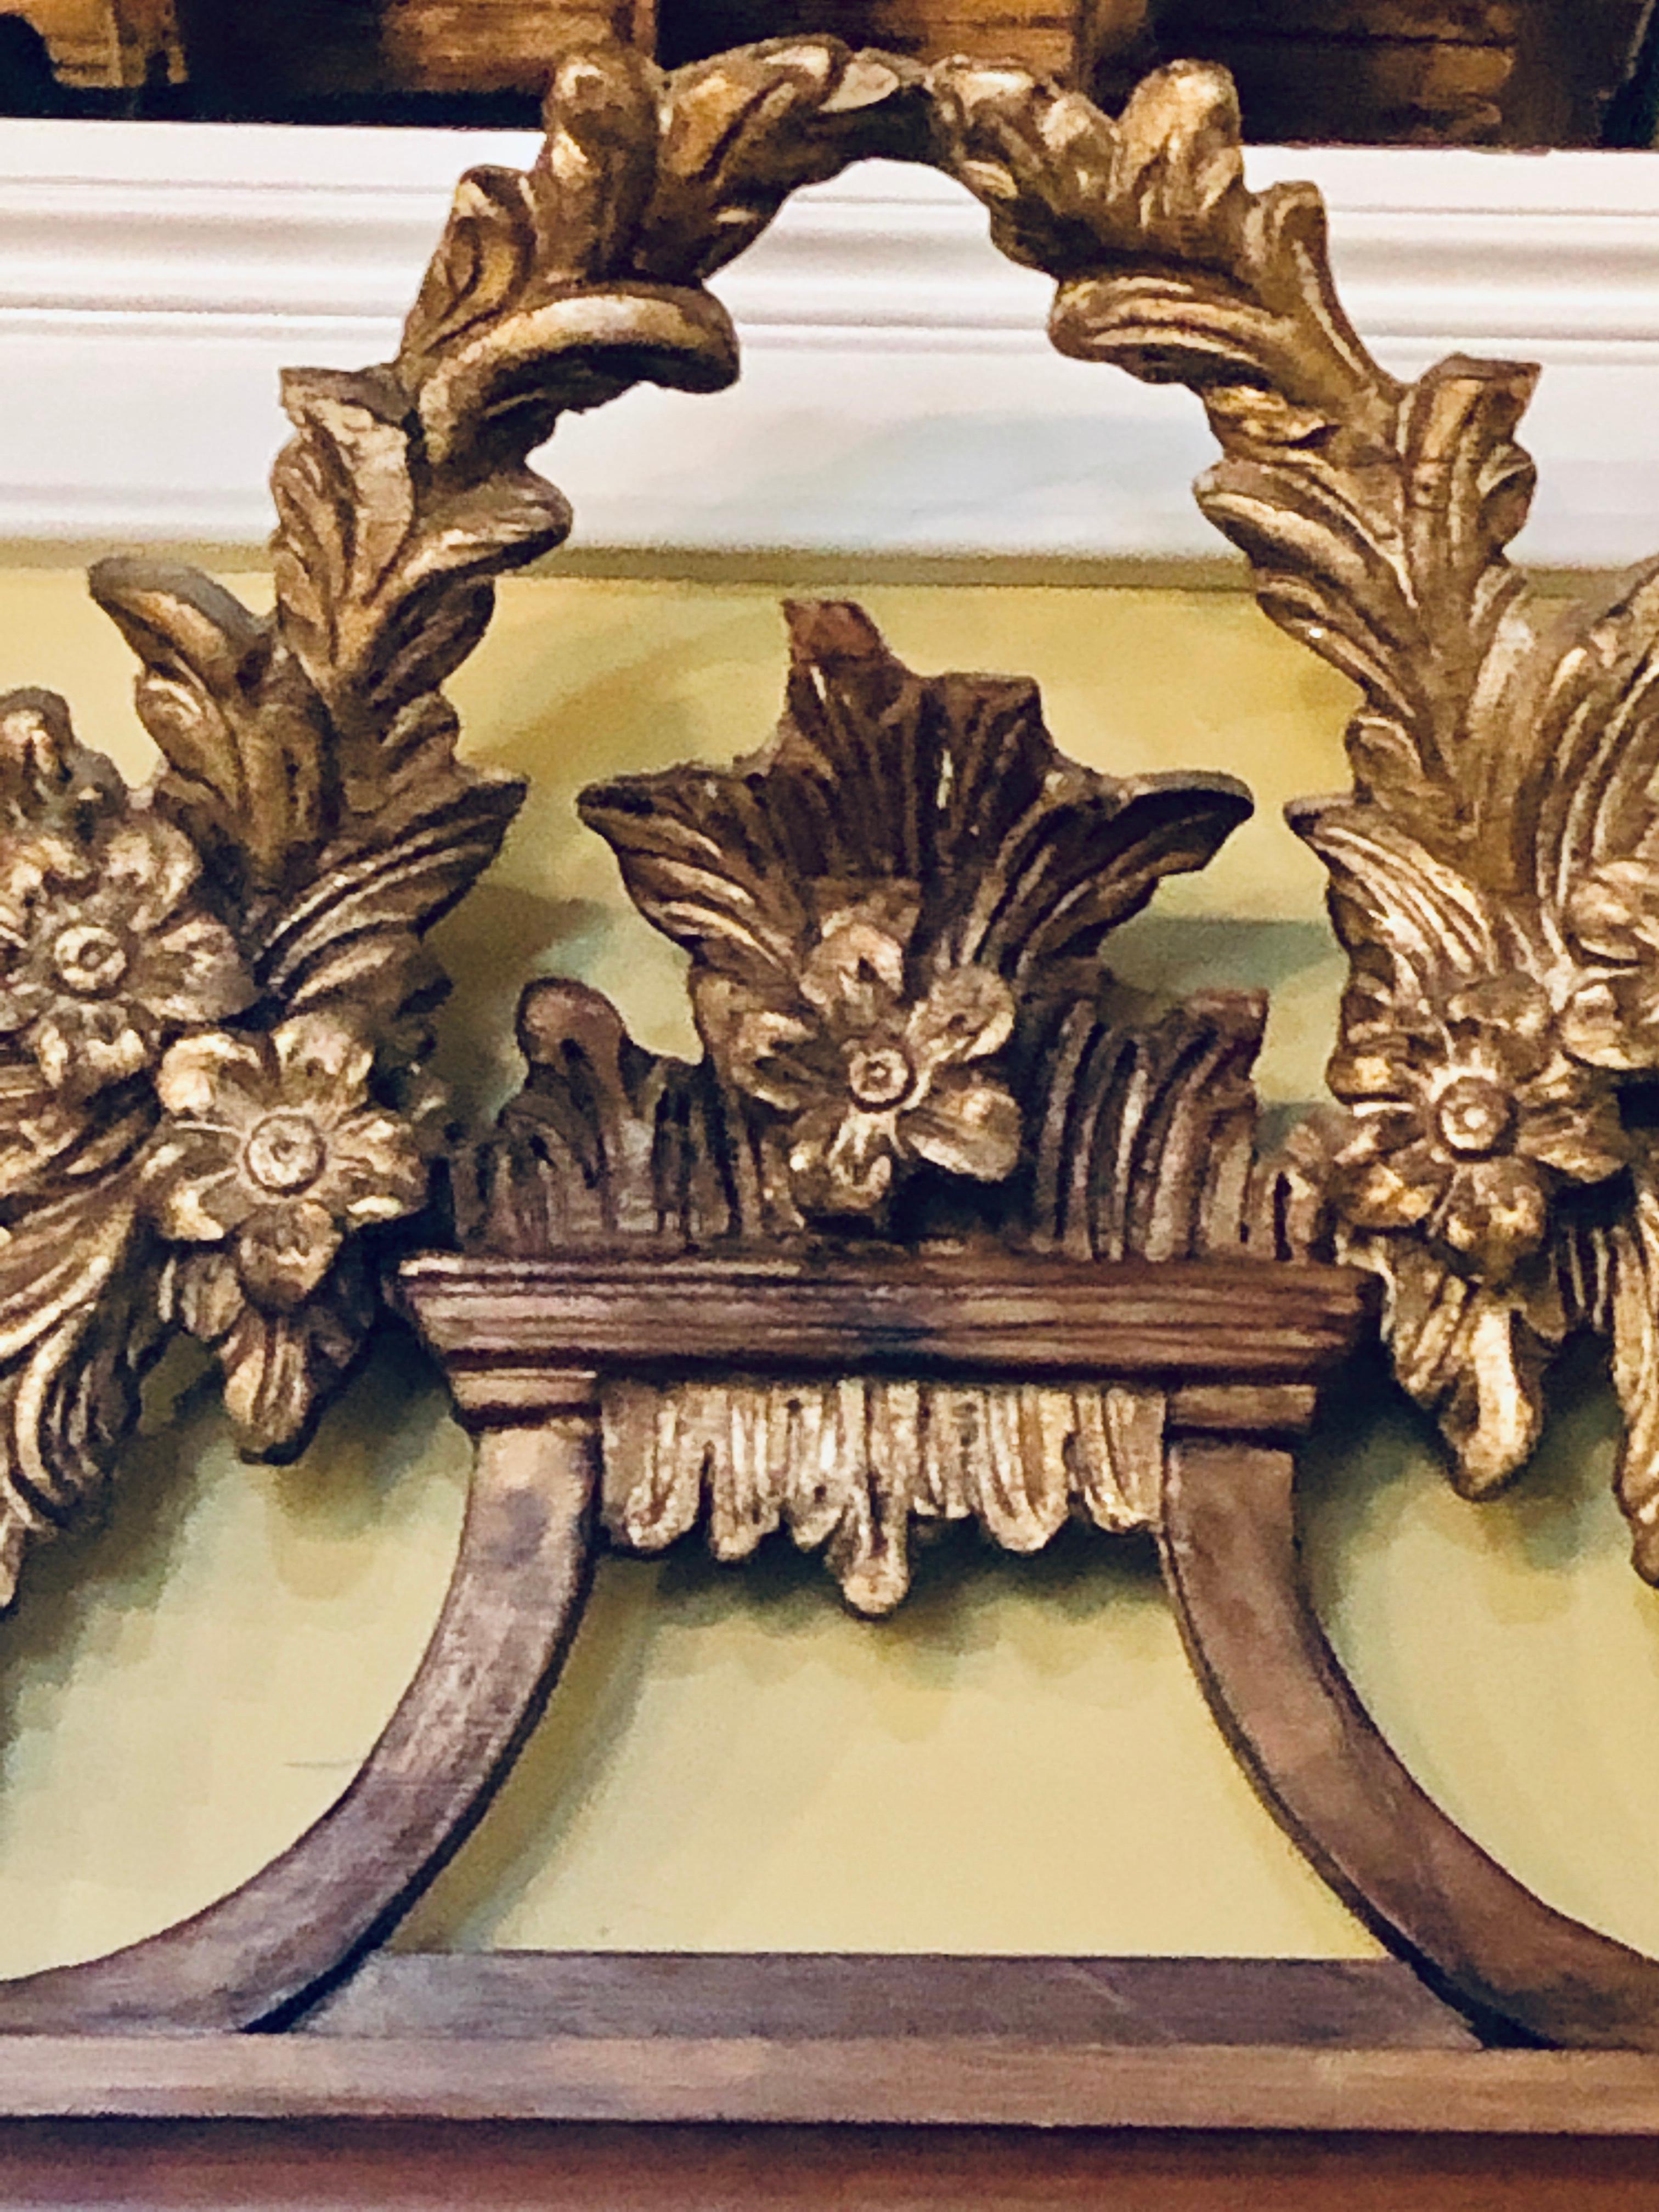 Miroir mural ou miroir de console italien sculpté de feuilles d'acanthe en or doré. Un miroir mural merveilleusement sculpté et détaillé avec un miroir biseauté encadré par un groupe sérieux de sculptures.